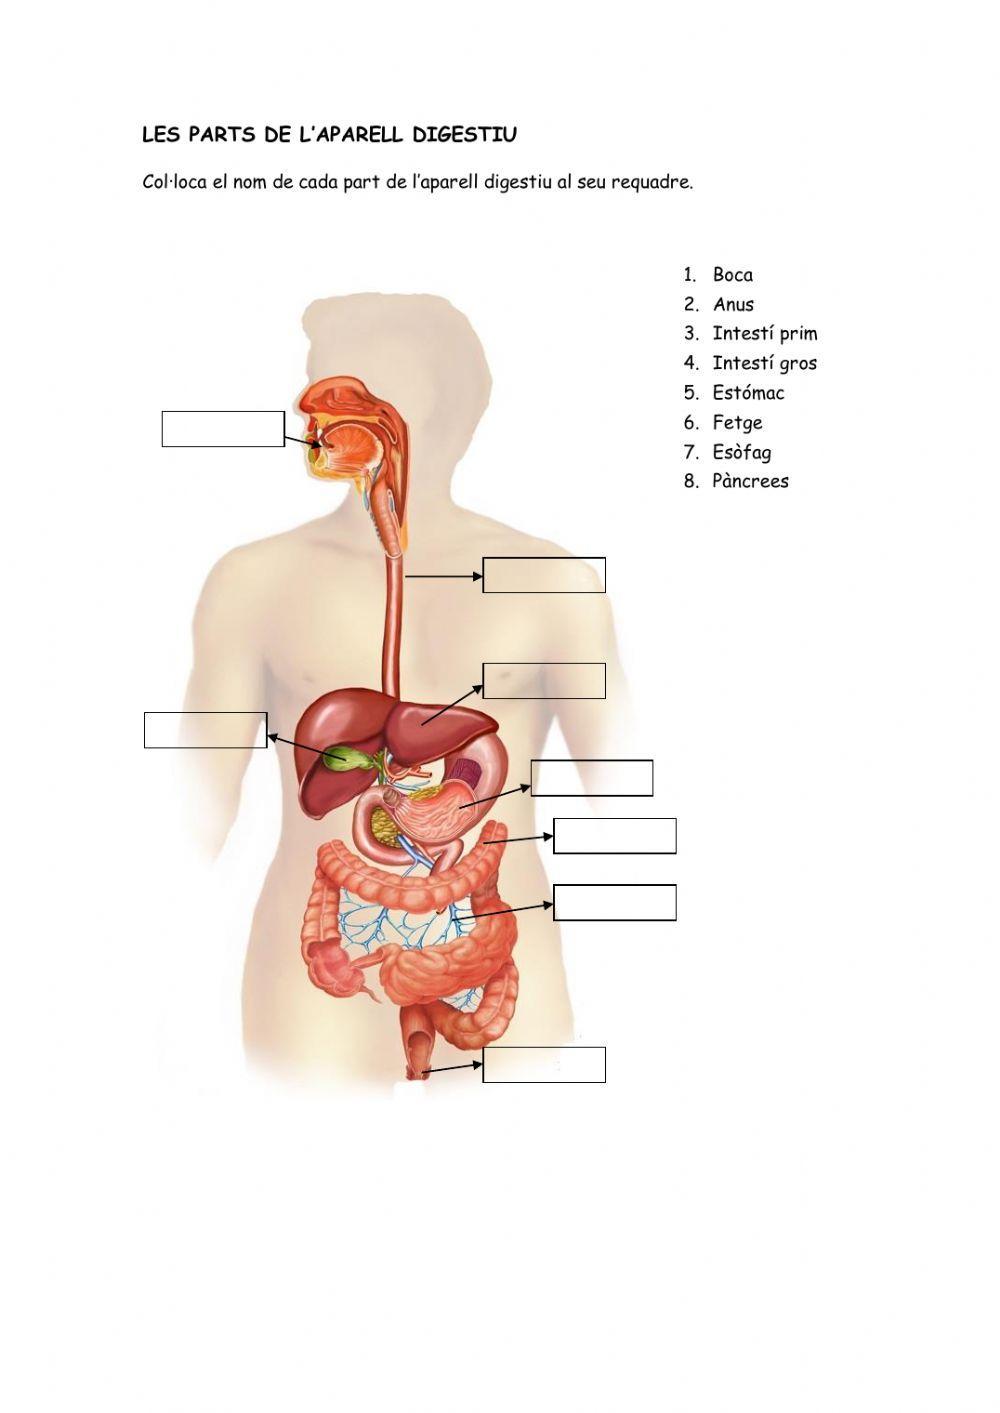 Les parts del sistema digestiu